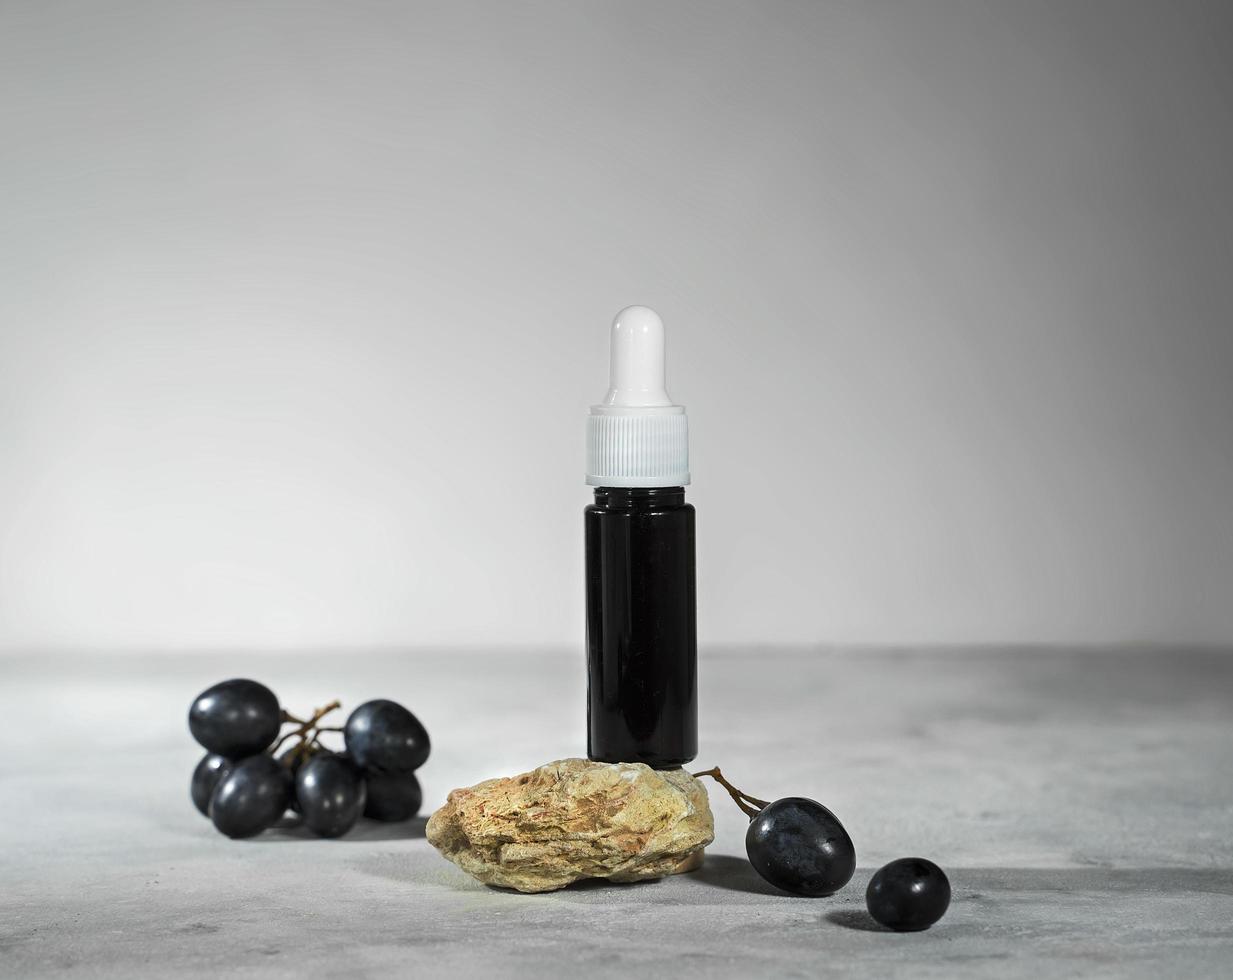 aceite de semilla de uva en una botella de vidrio con uvas negras frescas, aceite o suero esencial puro para el cuidado de la piel, concepto cosmético orgánico natural para el cuidado de la belleza foto